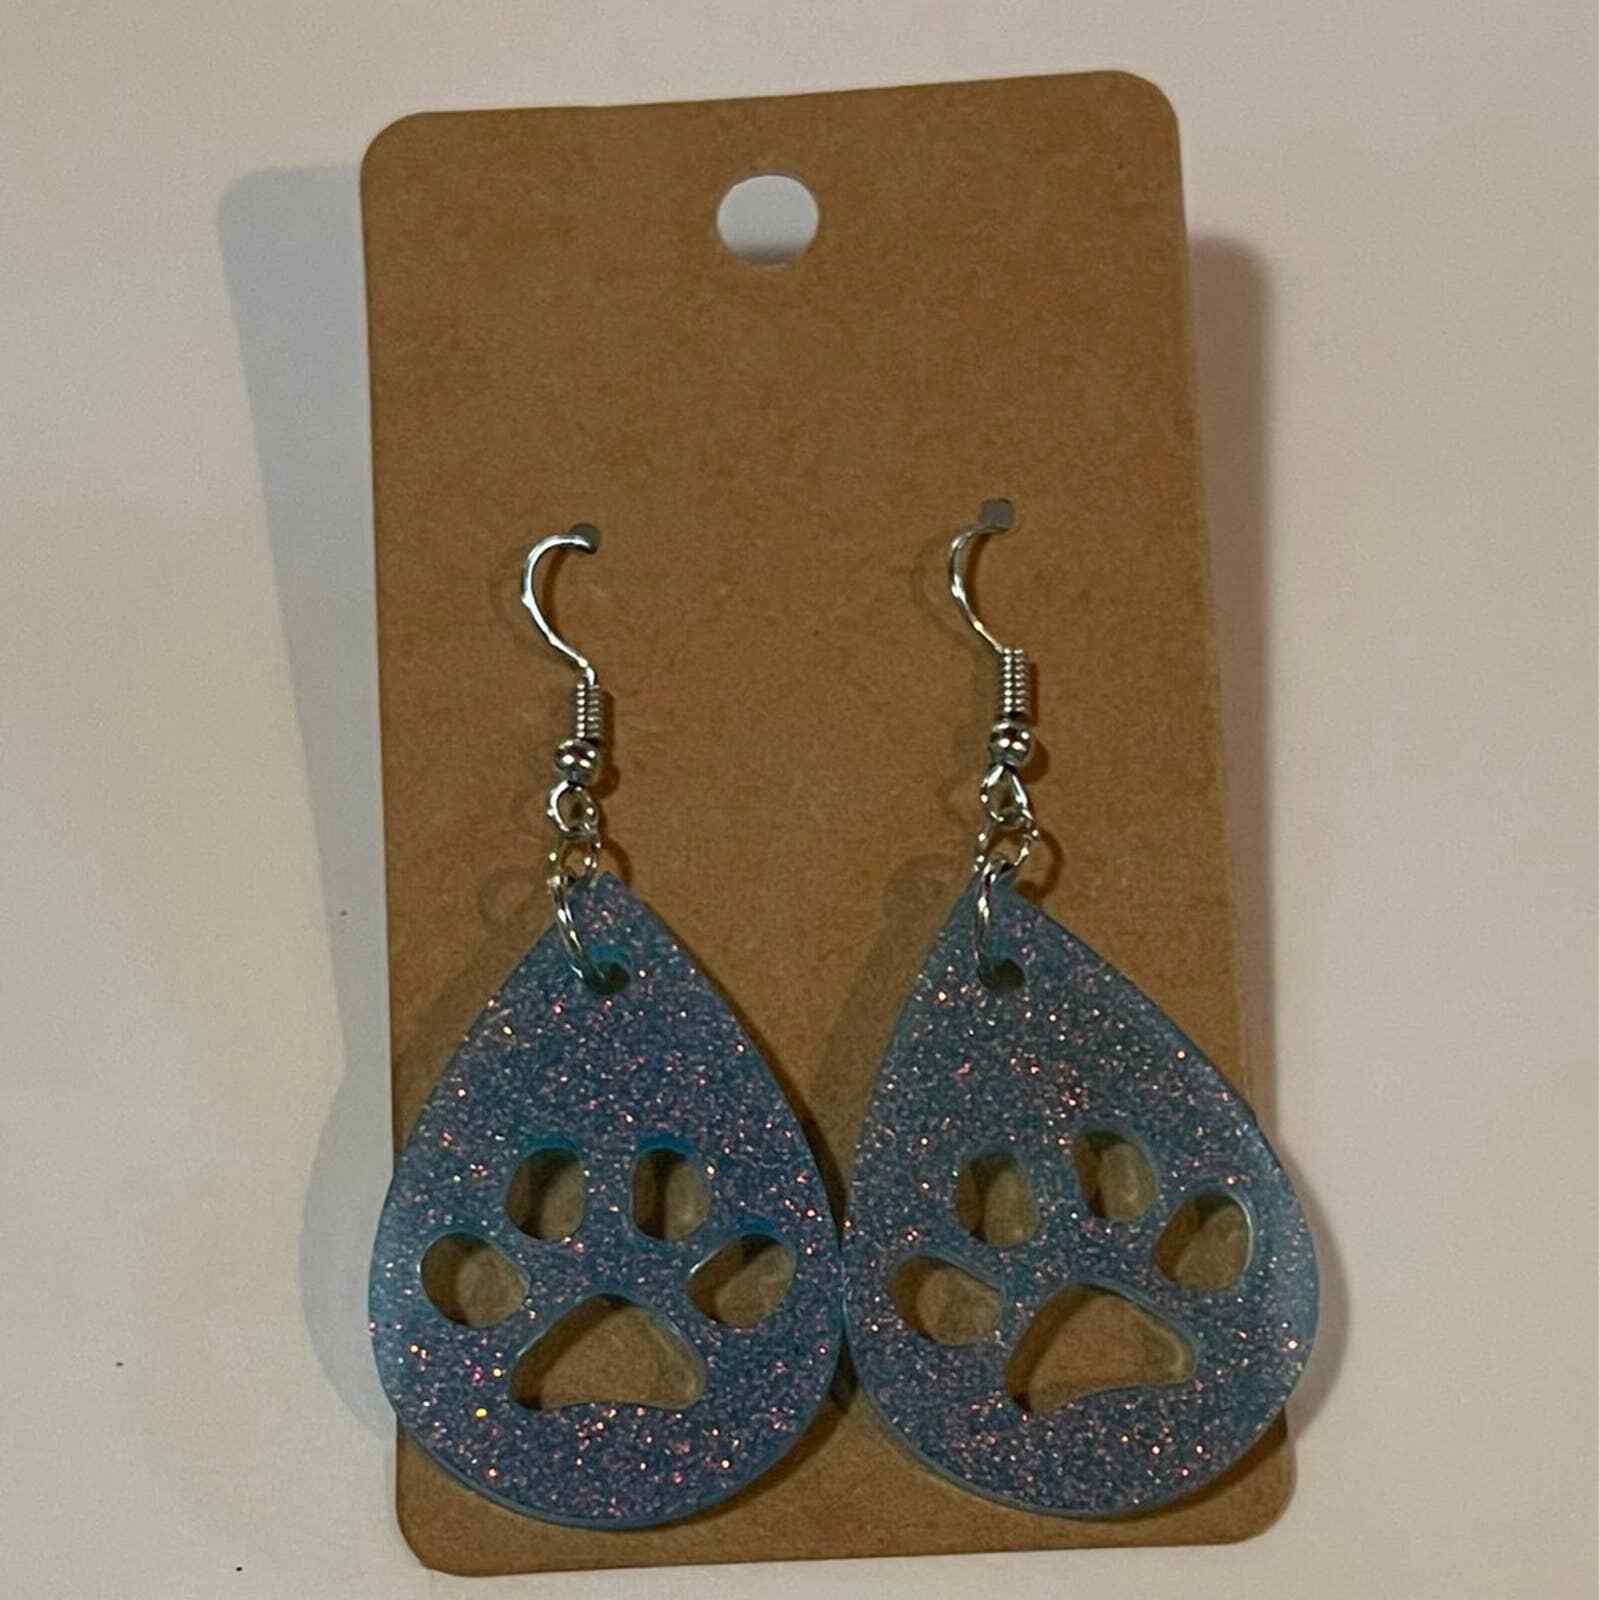 Primary image for Handmade epoxy resin paw print earrings - light blue glitter w/ rosegold flecks